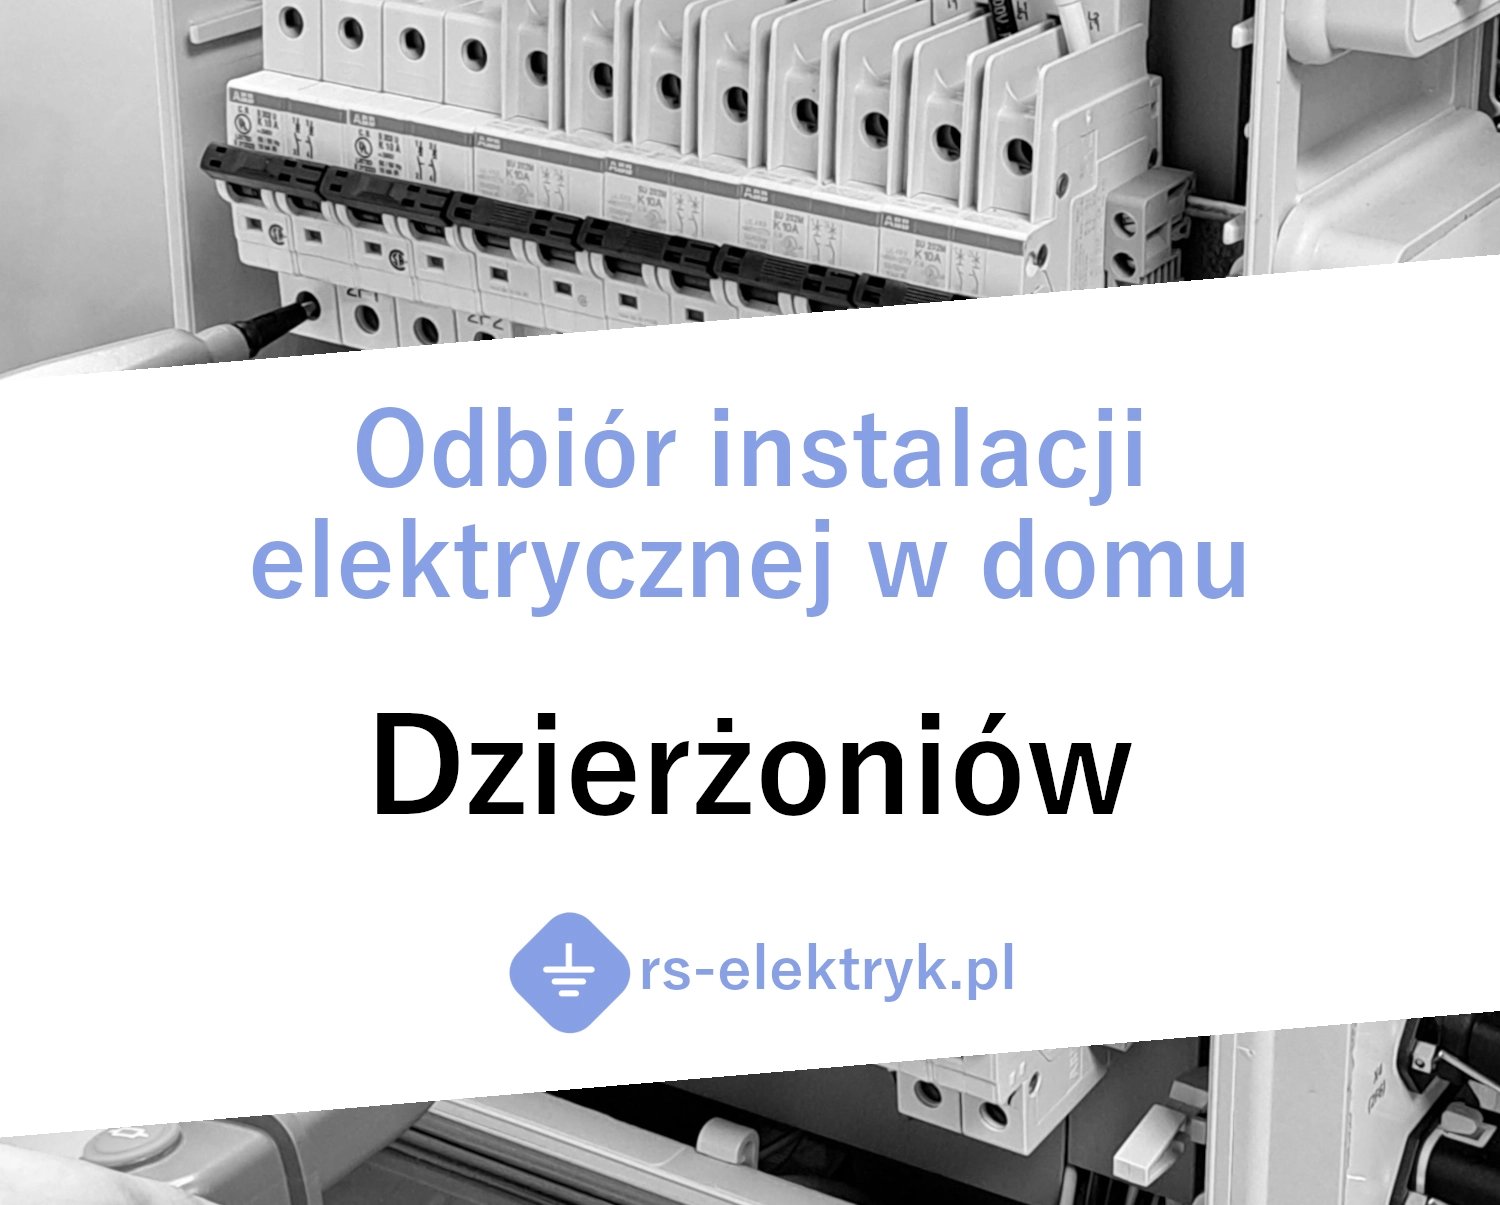 Odbiór instalacji elektrycznej w domu Dzierżoniów